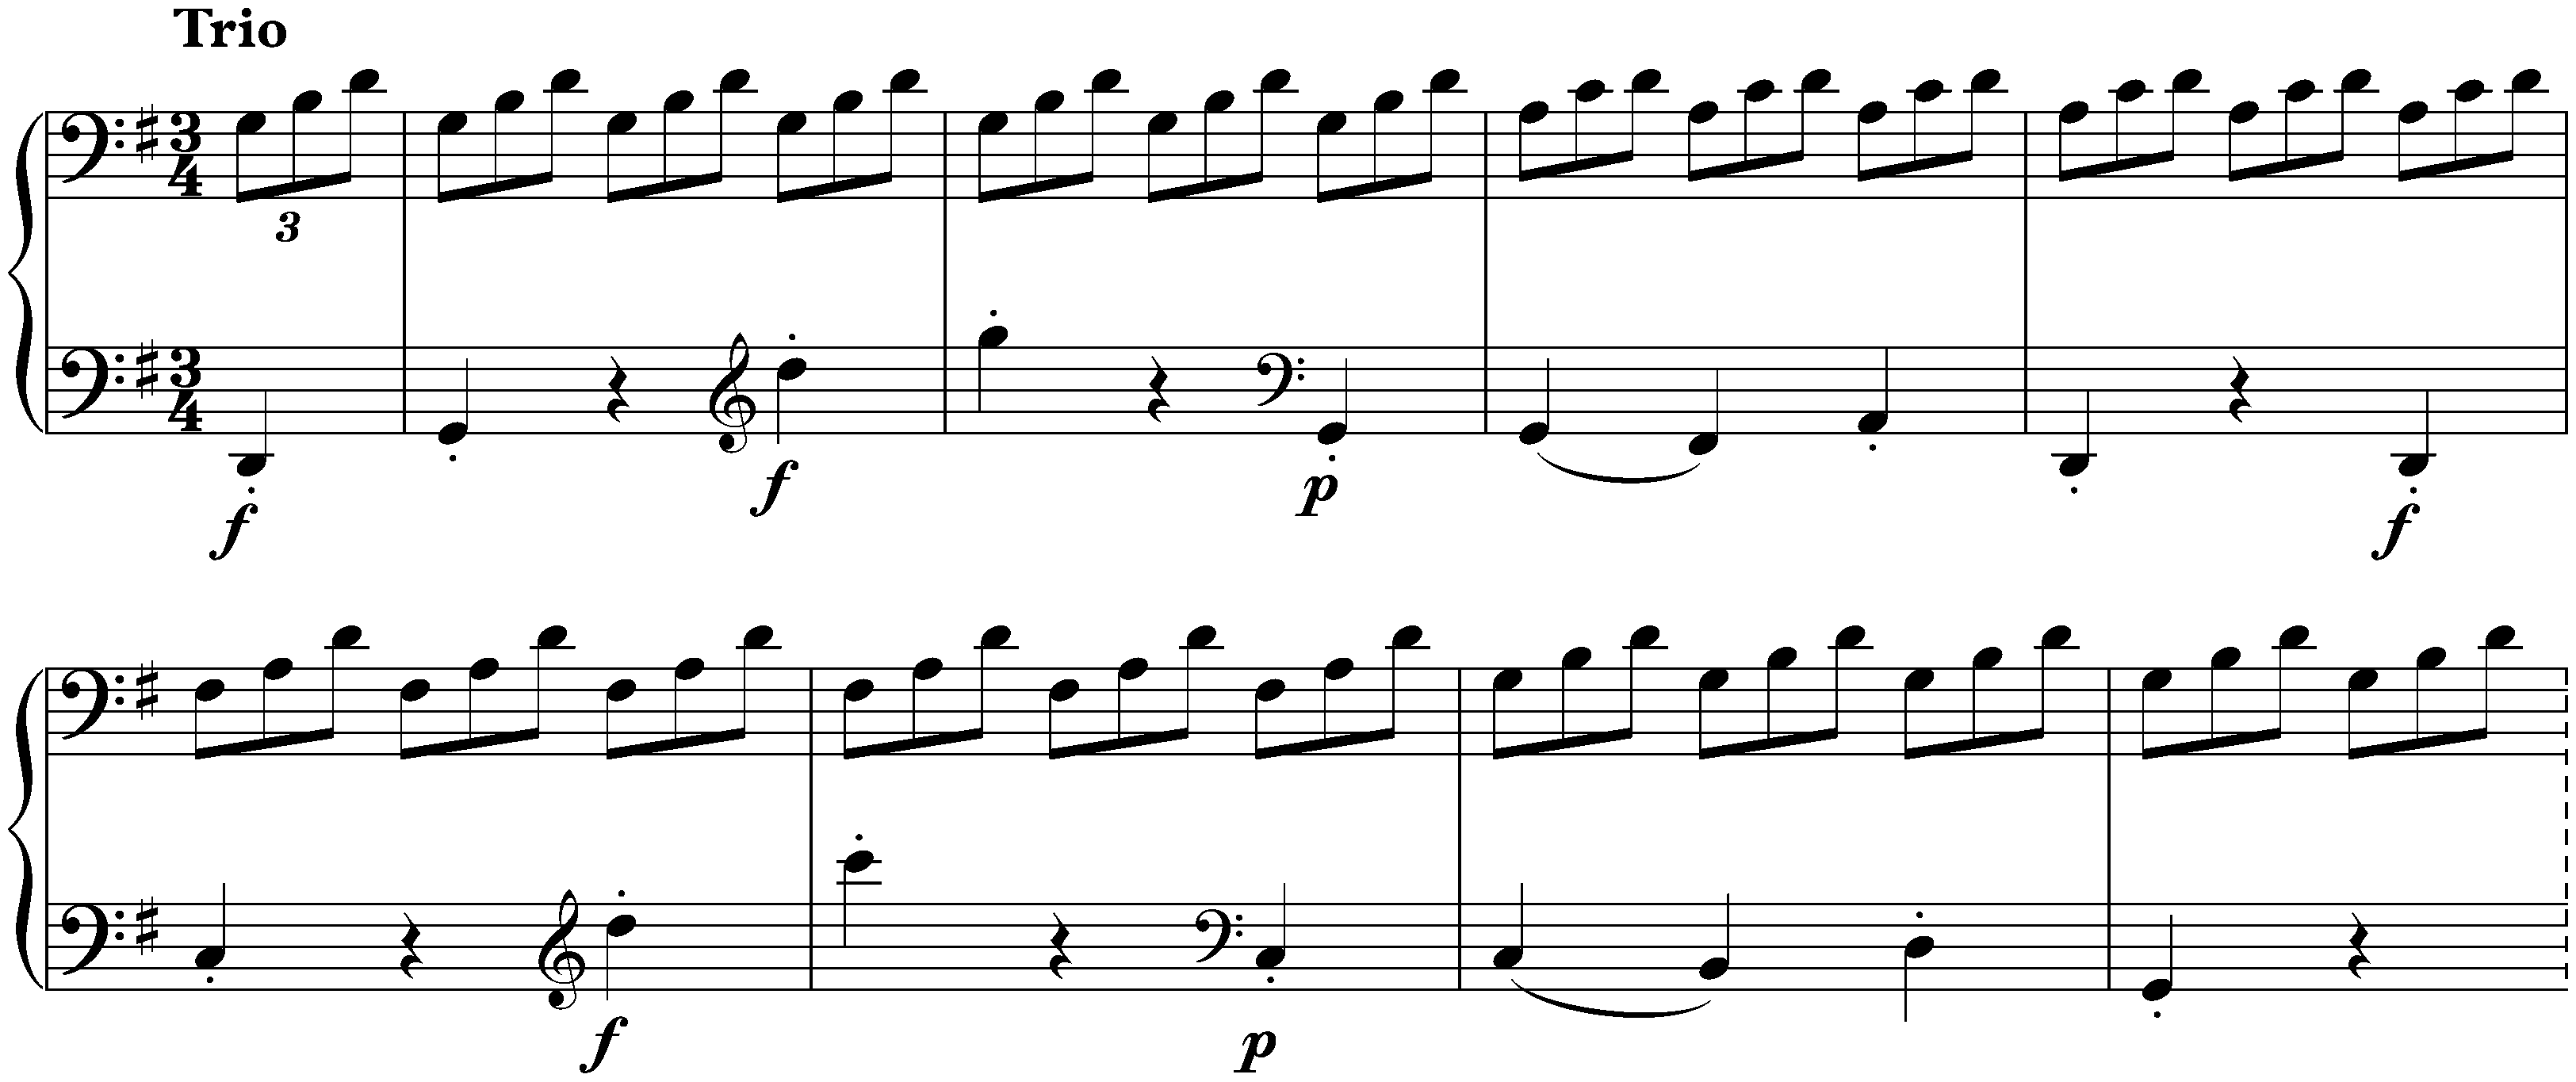 Sonata no. 7 in D major, op. 10 no. 3; 3. Menuetto: Allegro